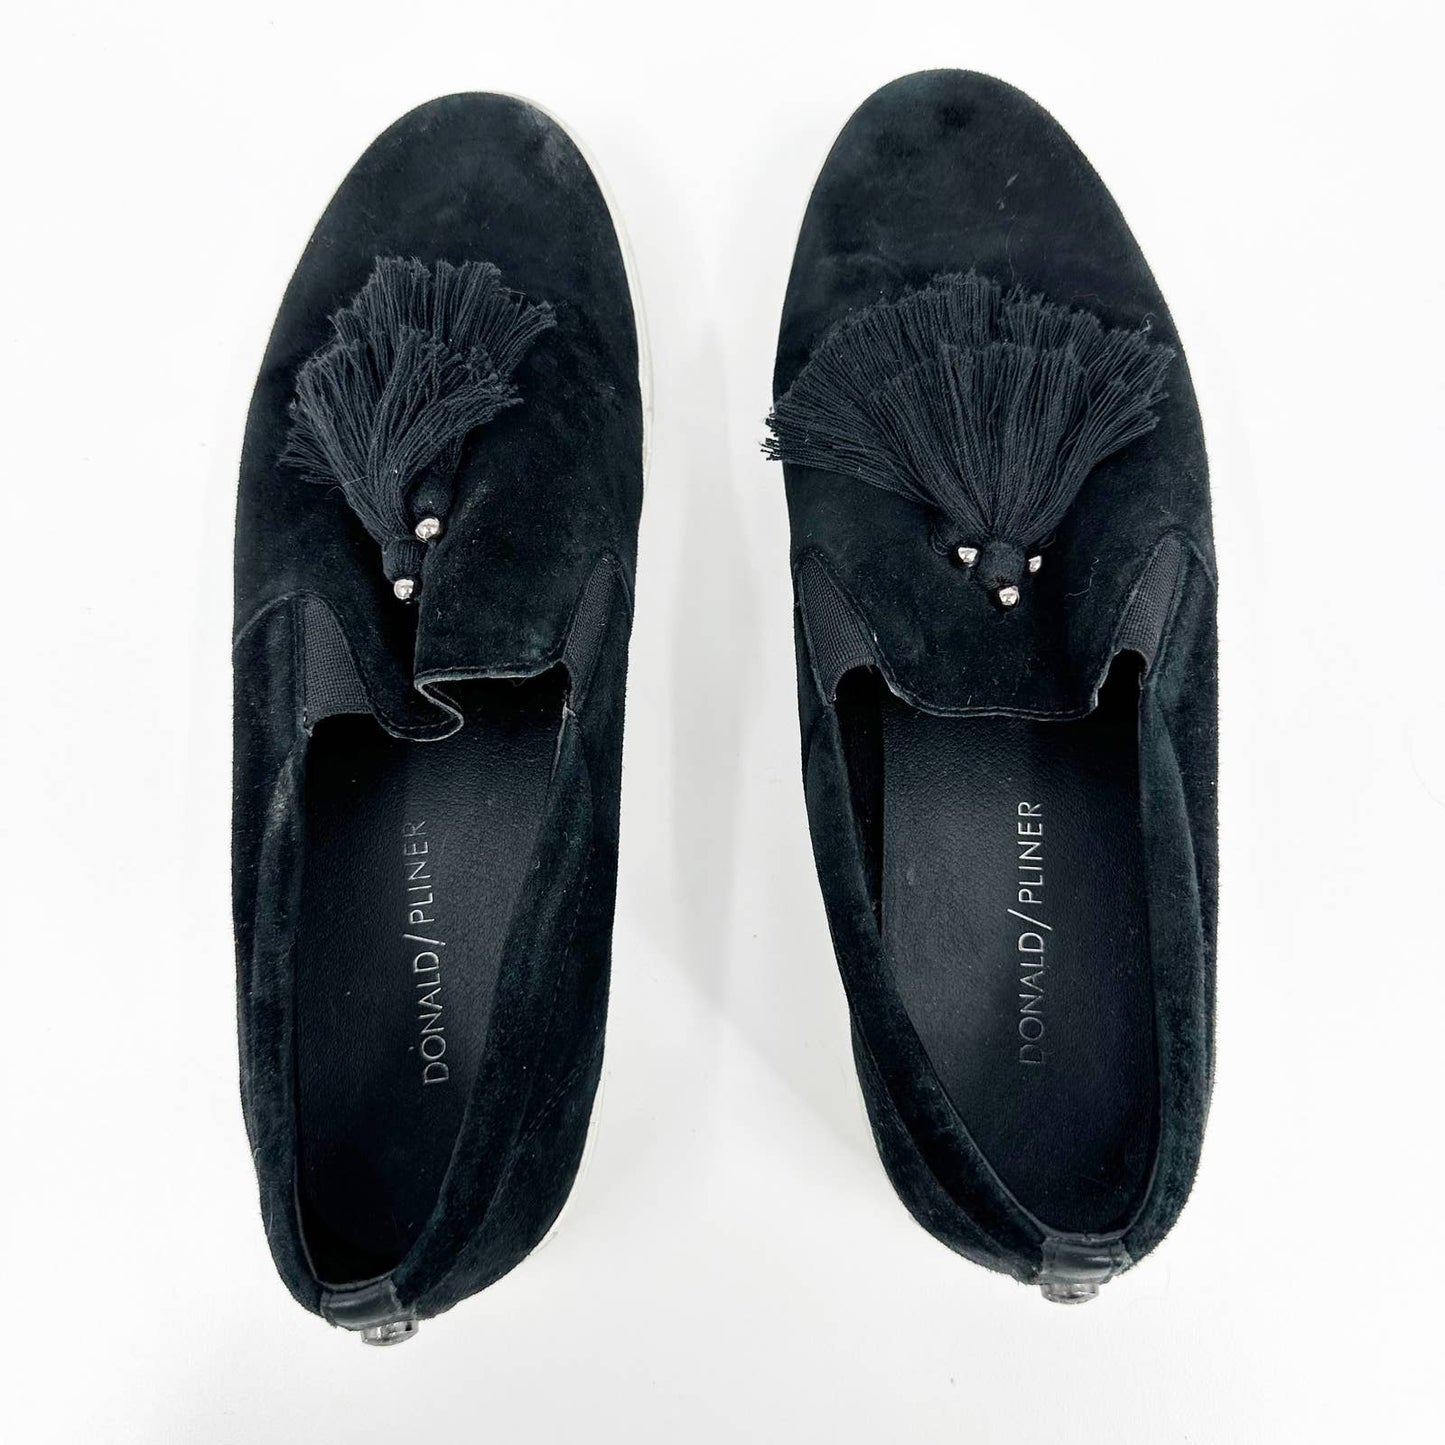 Donald Pliner Sallie Tassel Suede Slip On Sneakers Shoes Black 8.5